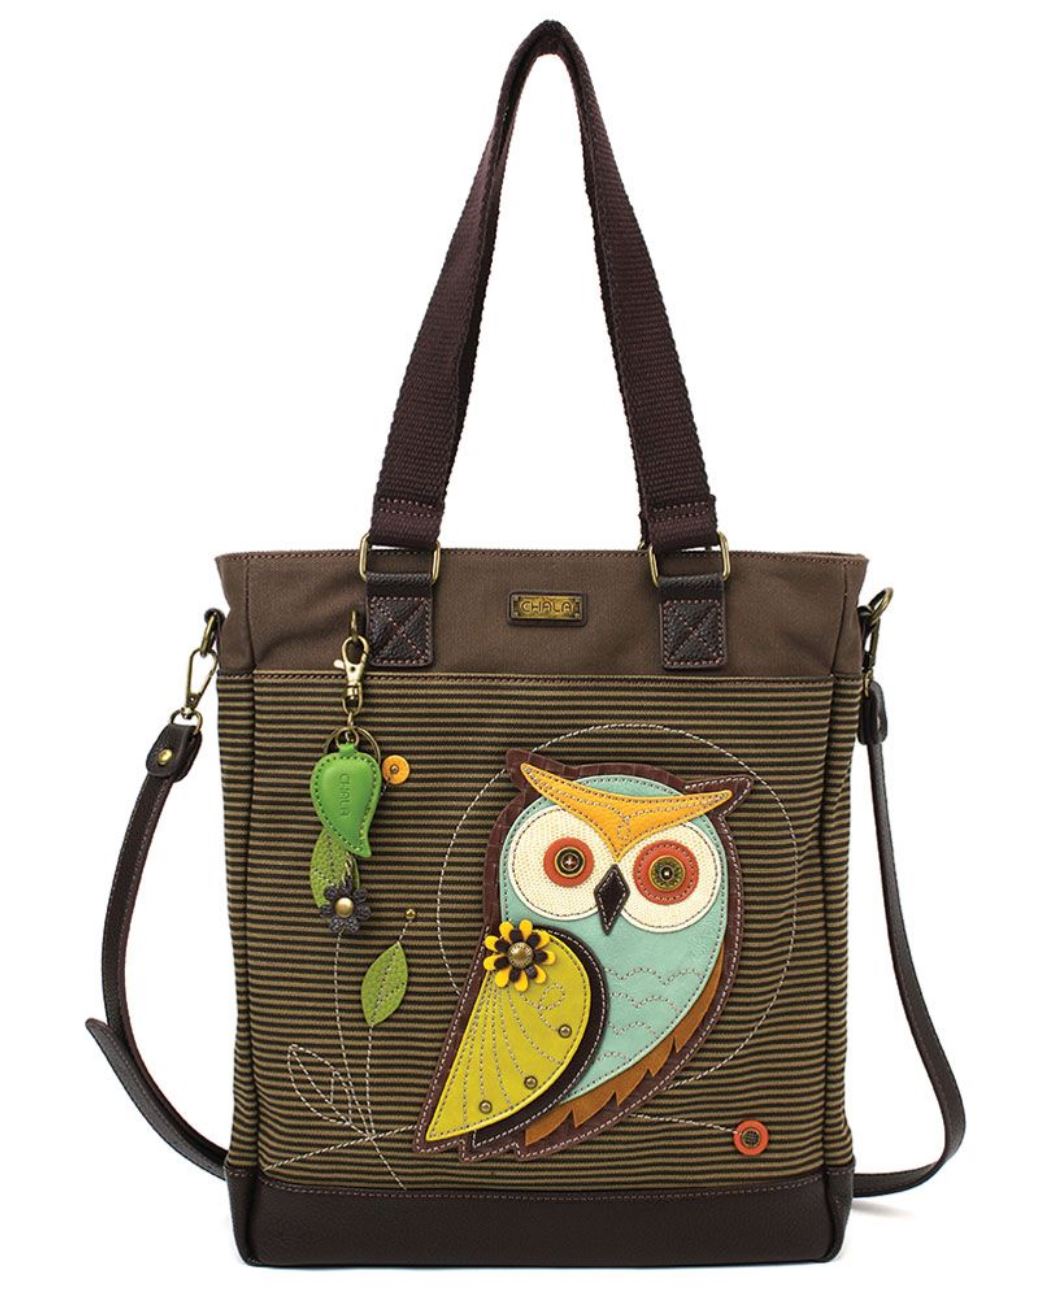 Chala Work Tote Bag - Owl